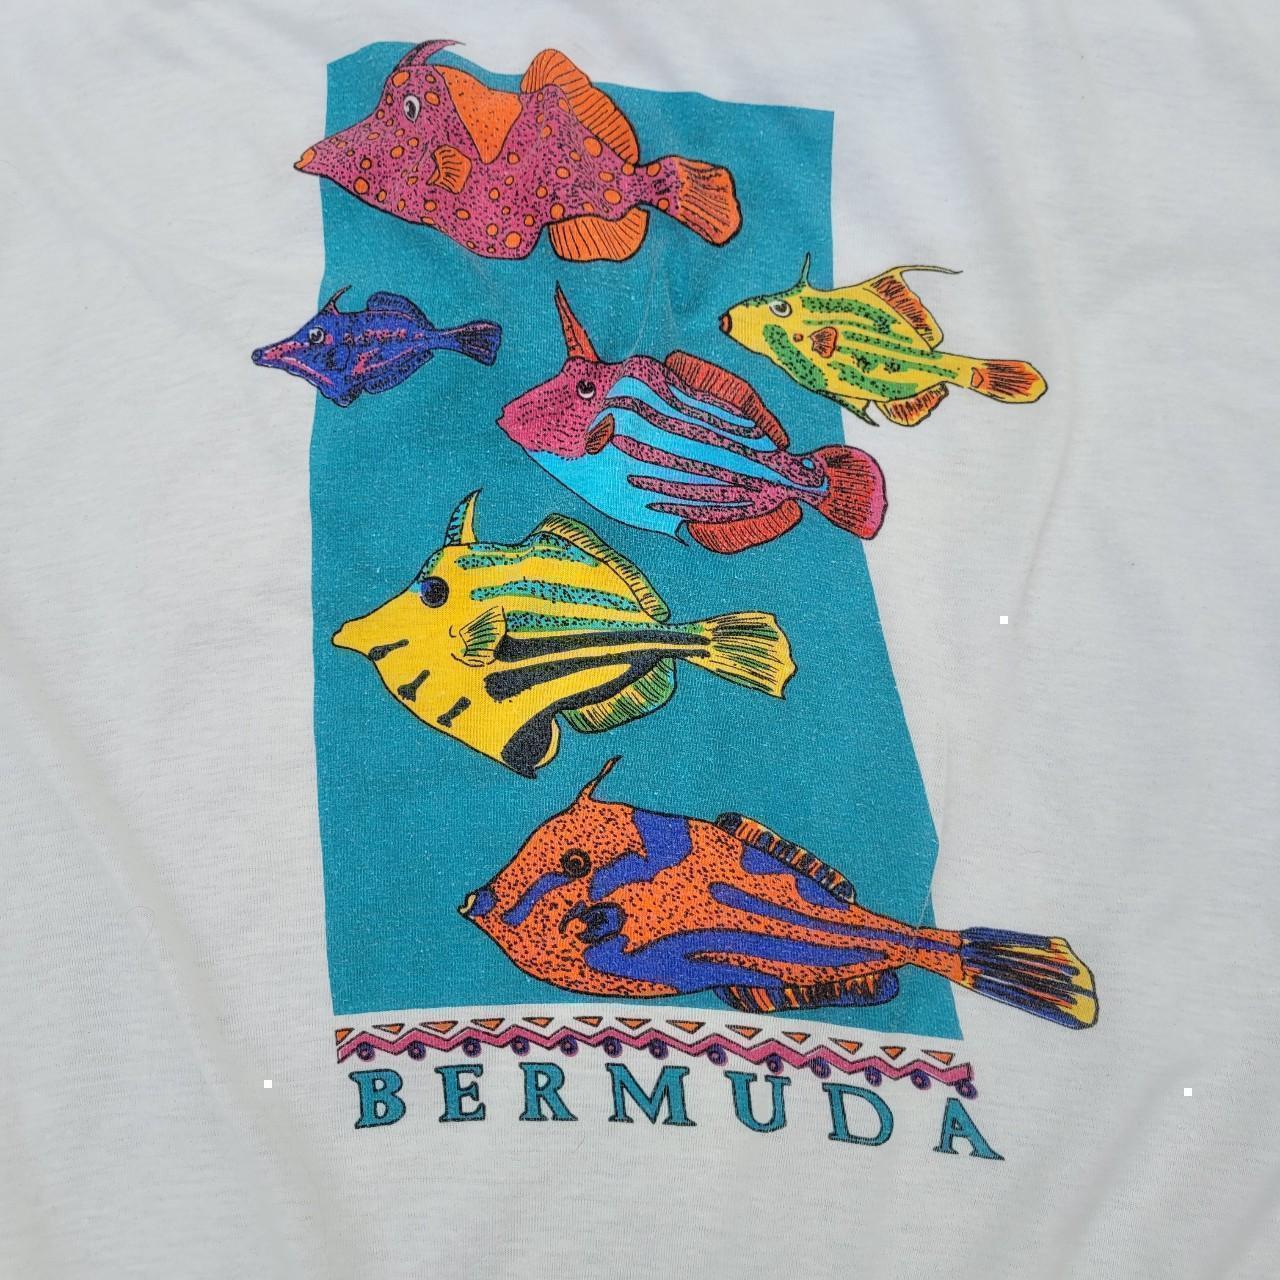 Tropical Fish T Shirt Mens Size XL Vintage 90s Coral - Depop